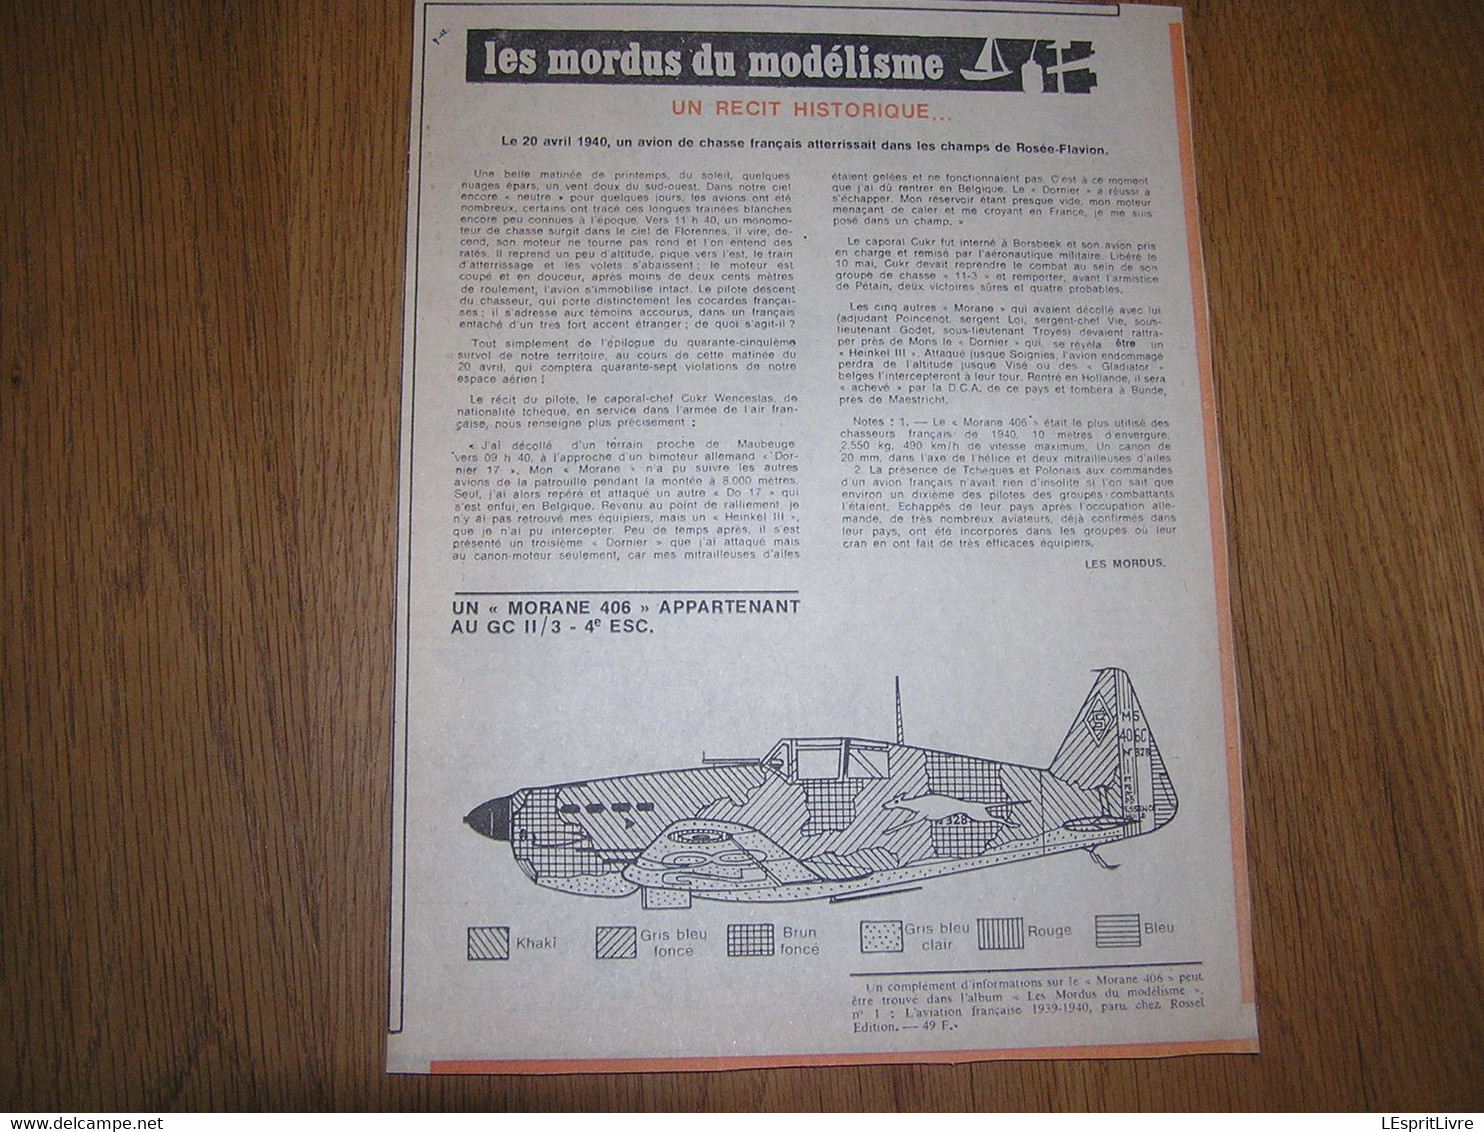 LES MORDUS DU MODELISME N° 1 L'Aviation Française 1939 40 Guerre 40 45 Maquette Avion Camouflage Marques Marking Morane